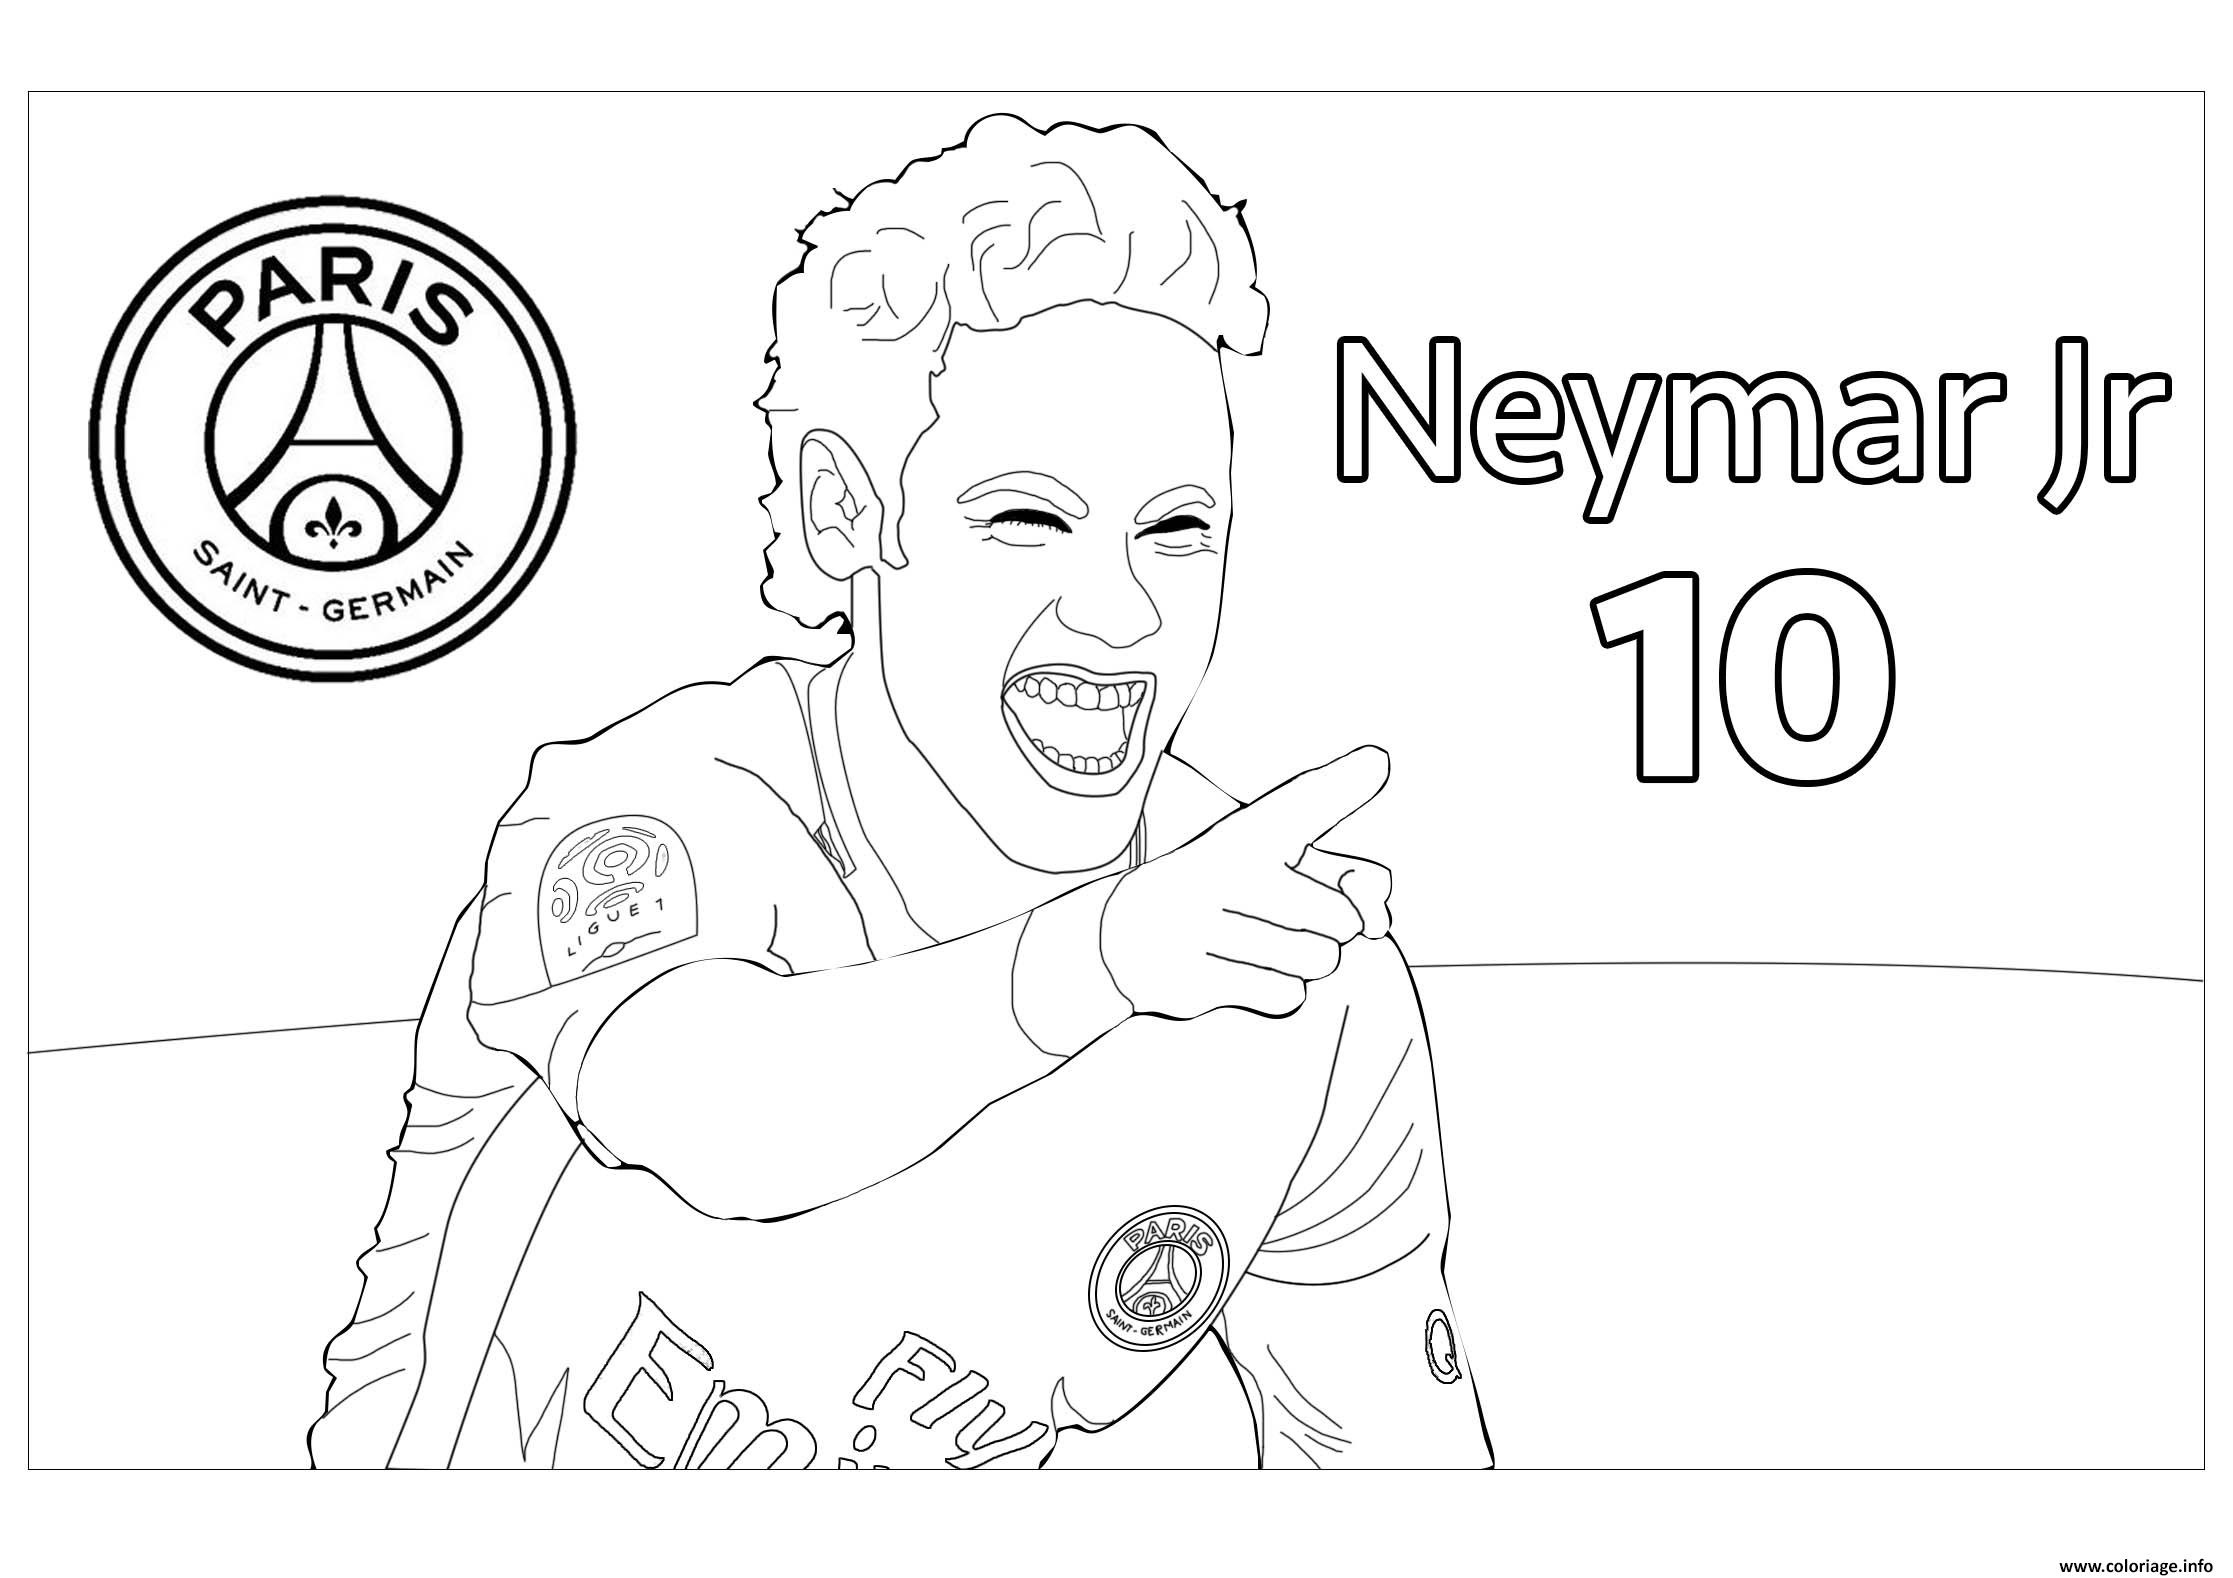 joueur de foot neymar jr psg coloriage